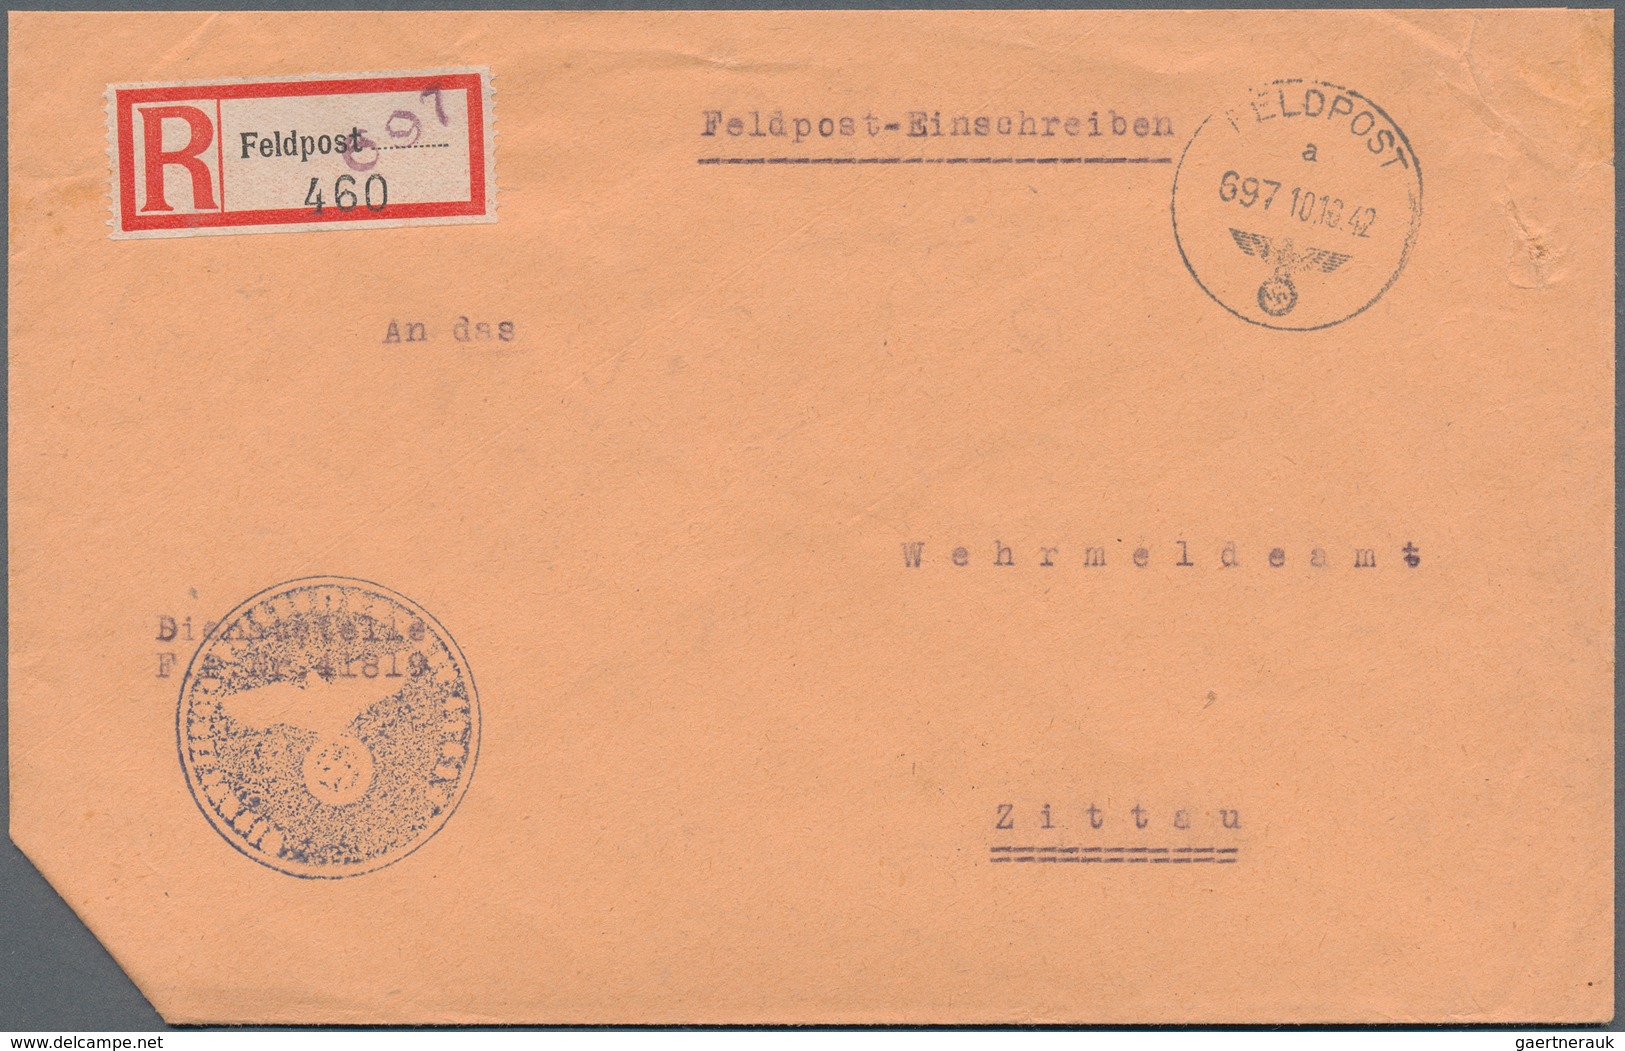 32034 Feldpost 2. Weltkrieg: 1937/1945, reichhaltiger Posten mit über 400 Belegen der Deutschen Feldpost W